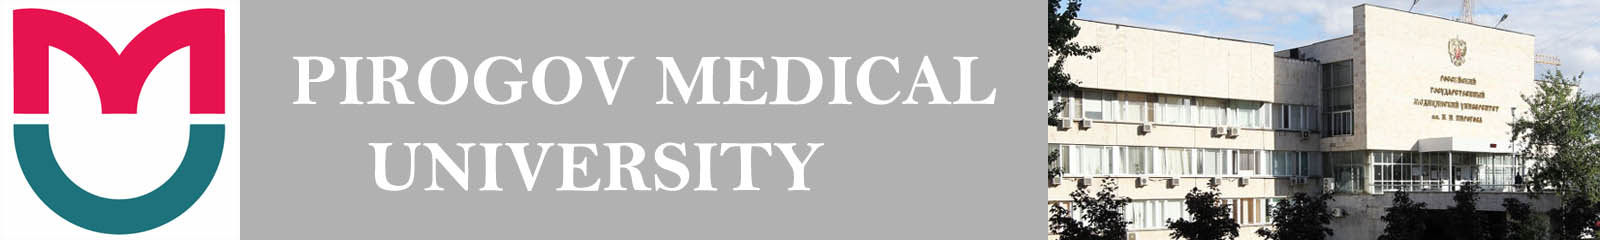 pirogov medical university